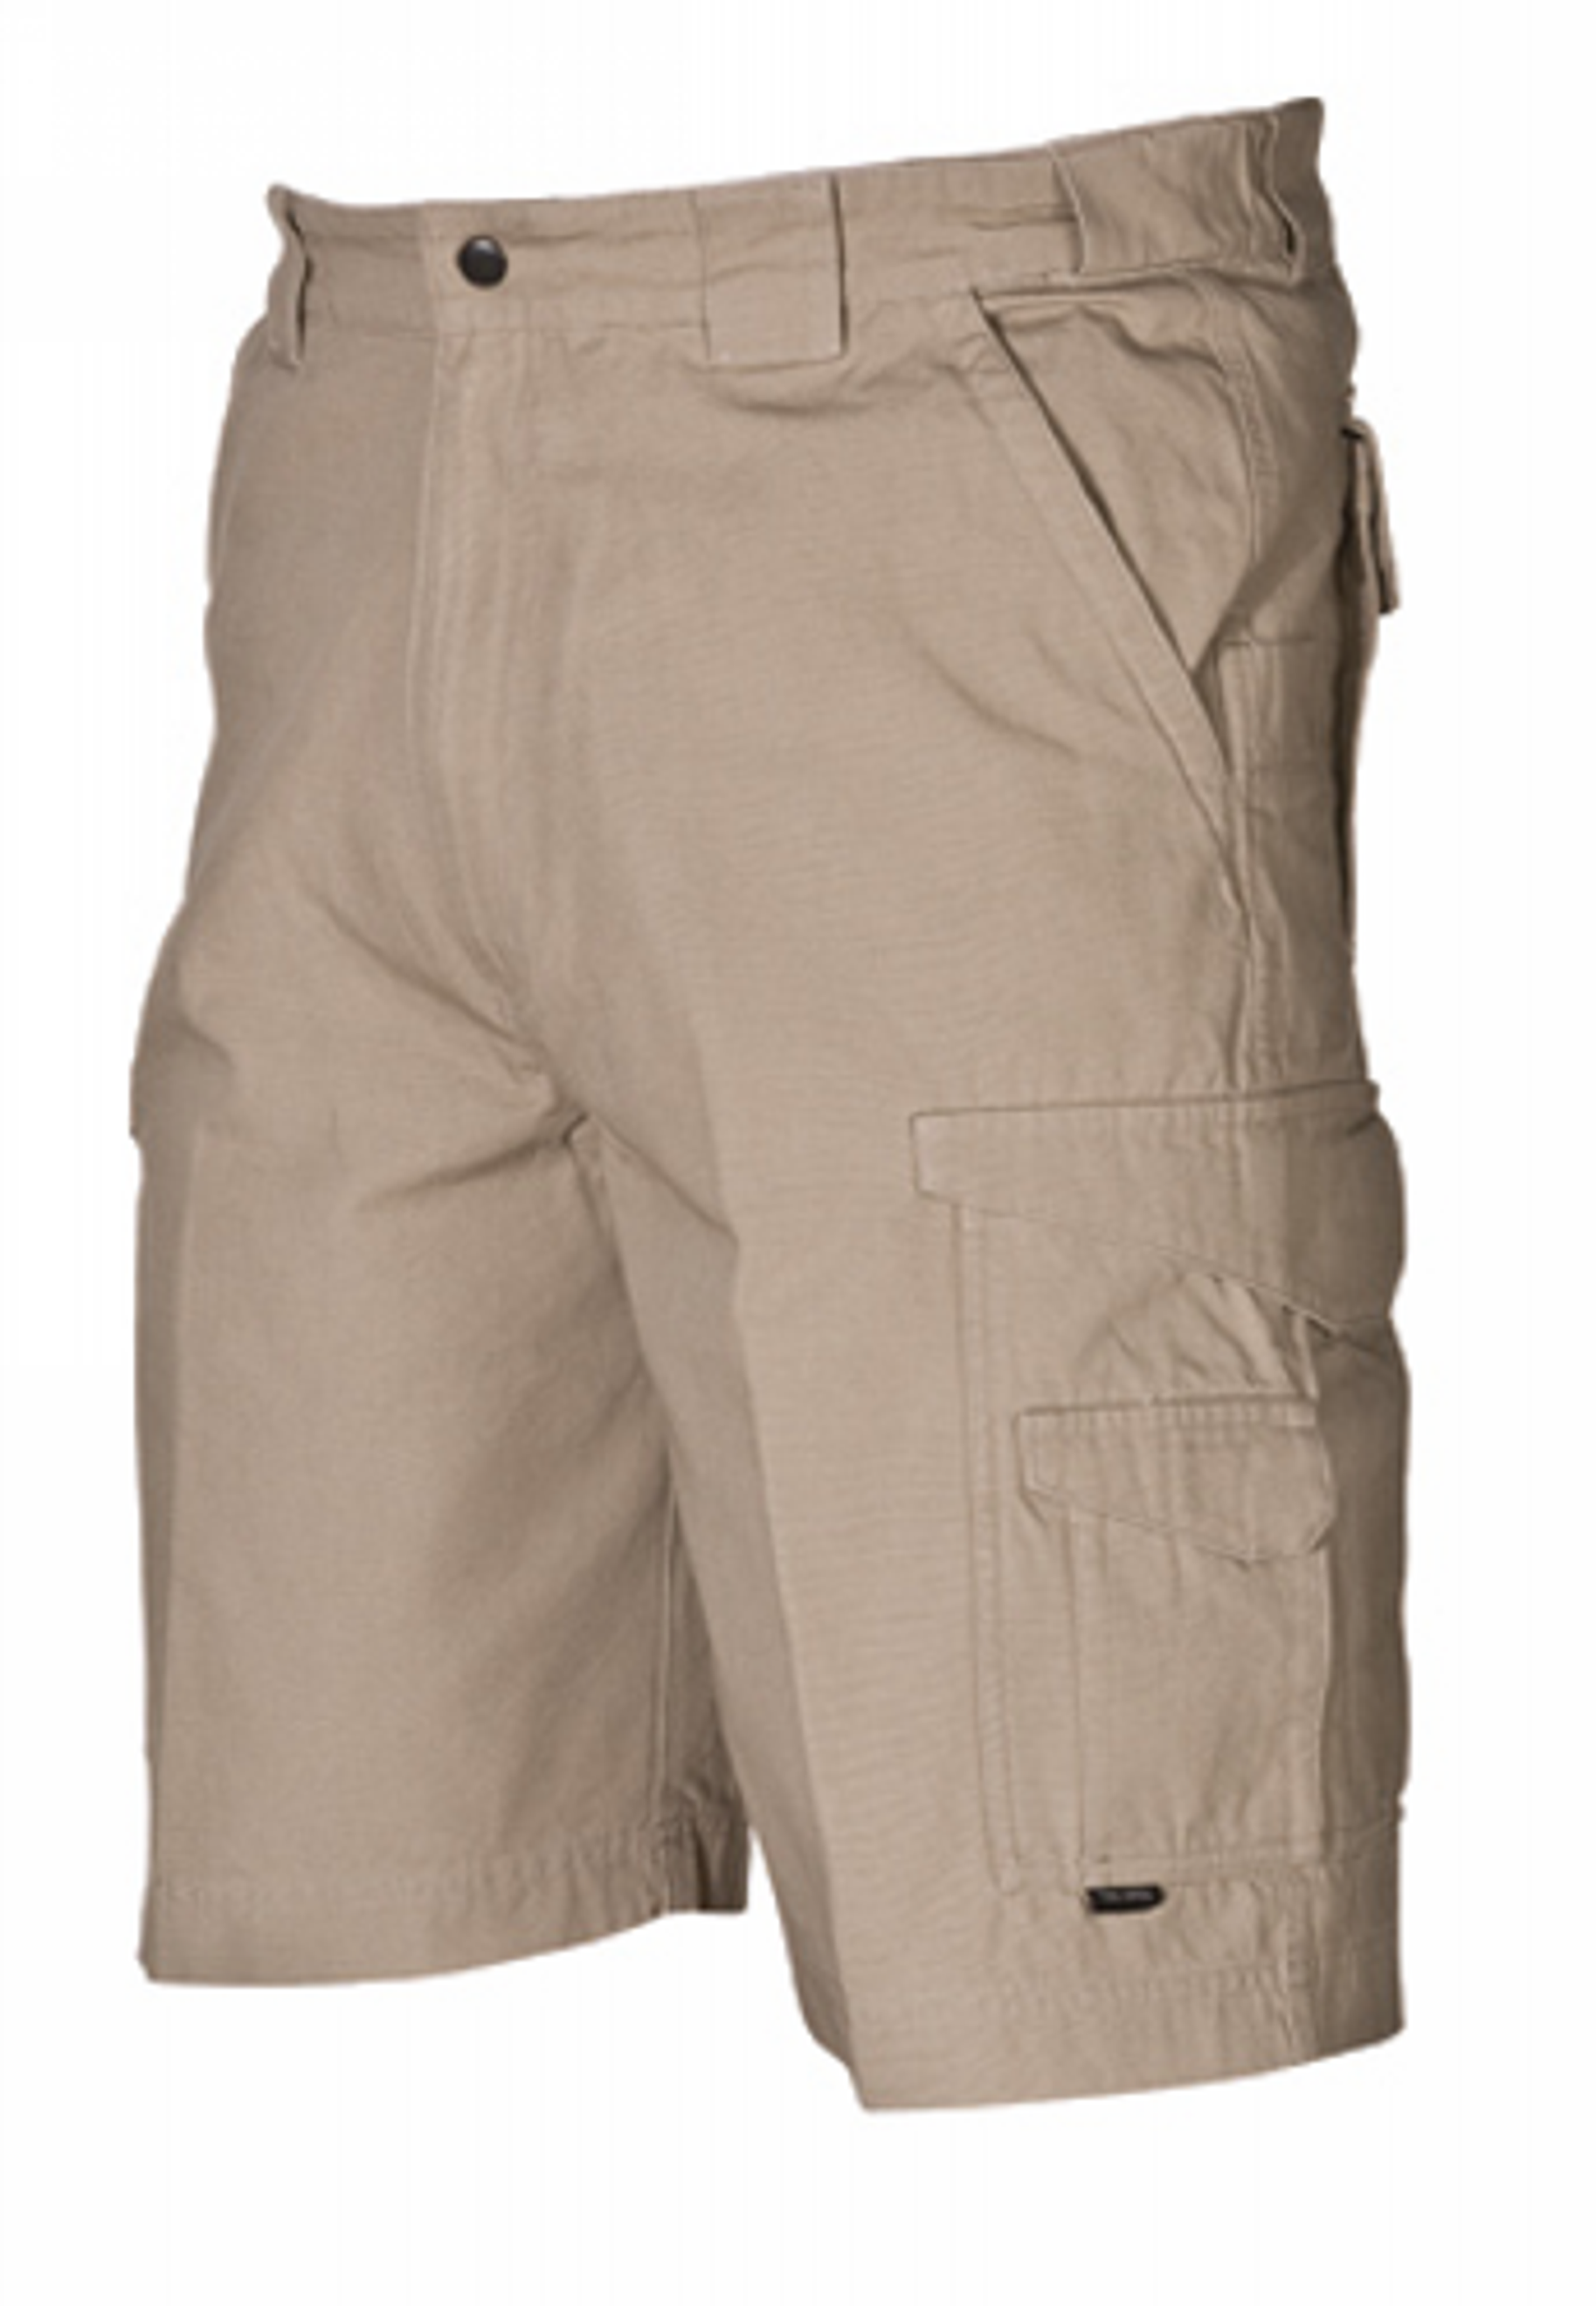 Original Tactical Shorts - KRTSP-4269005